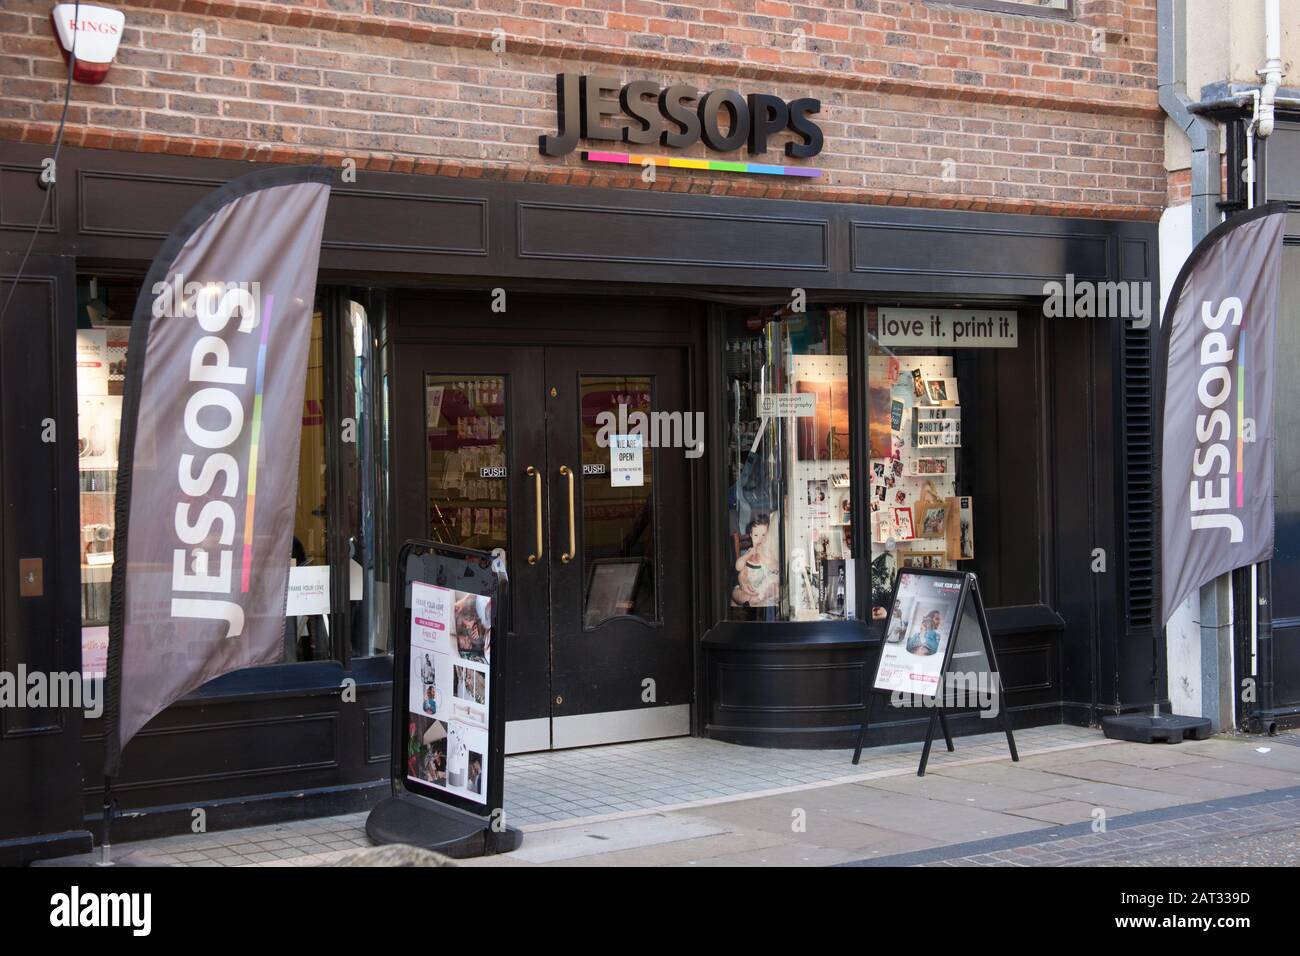 Jessops Camera shop in Oxford, UK Stock Photo